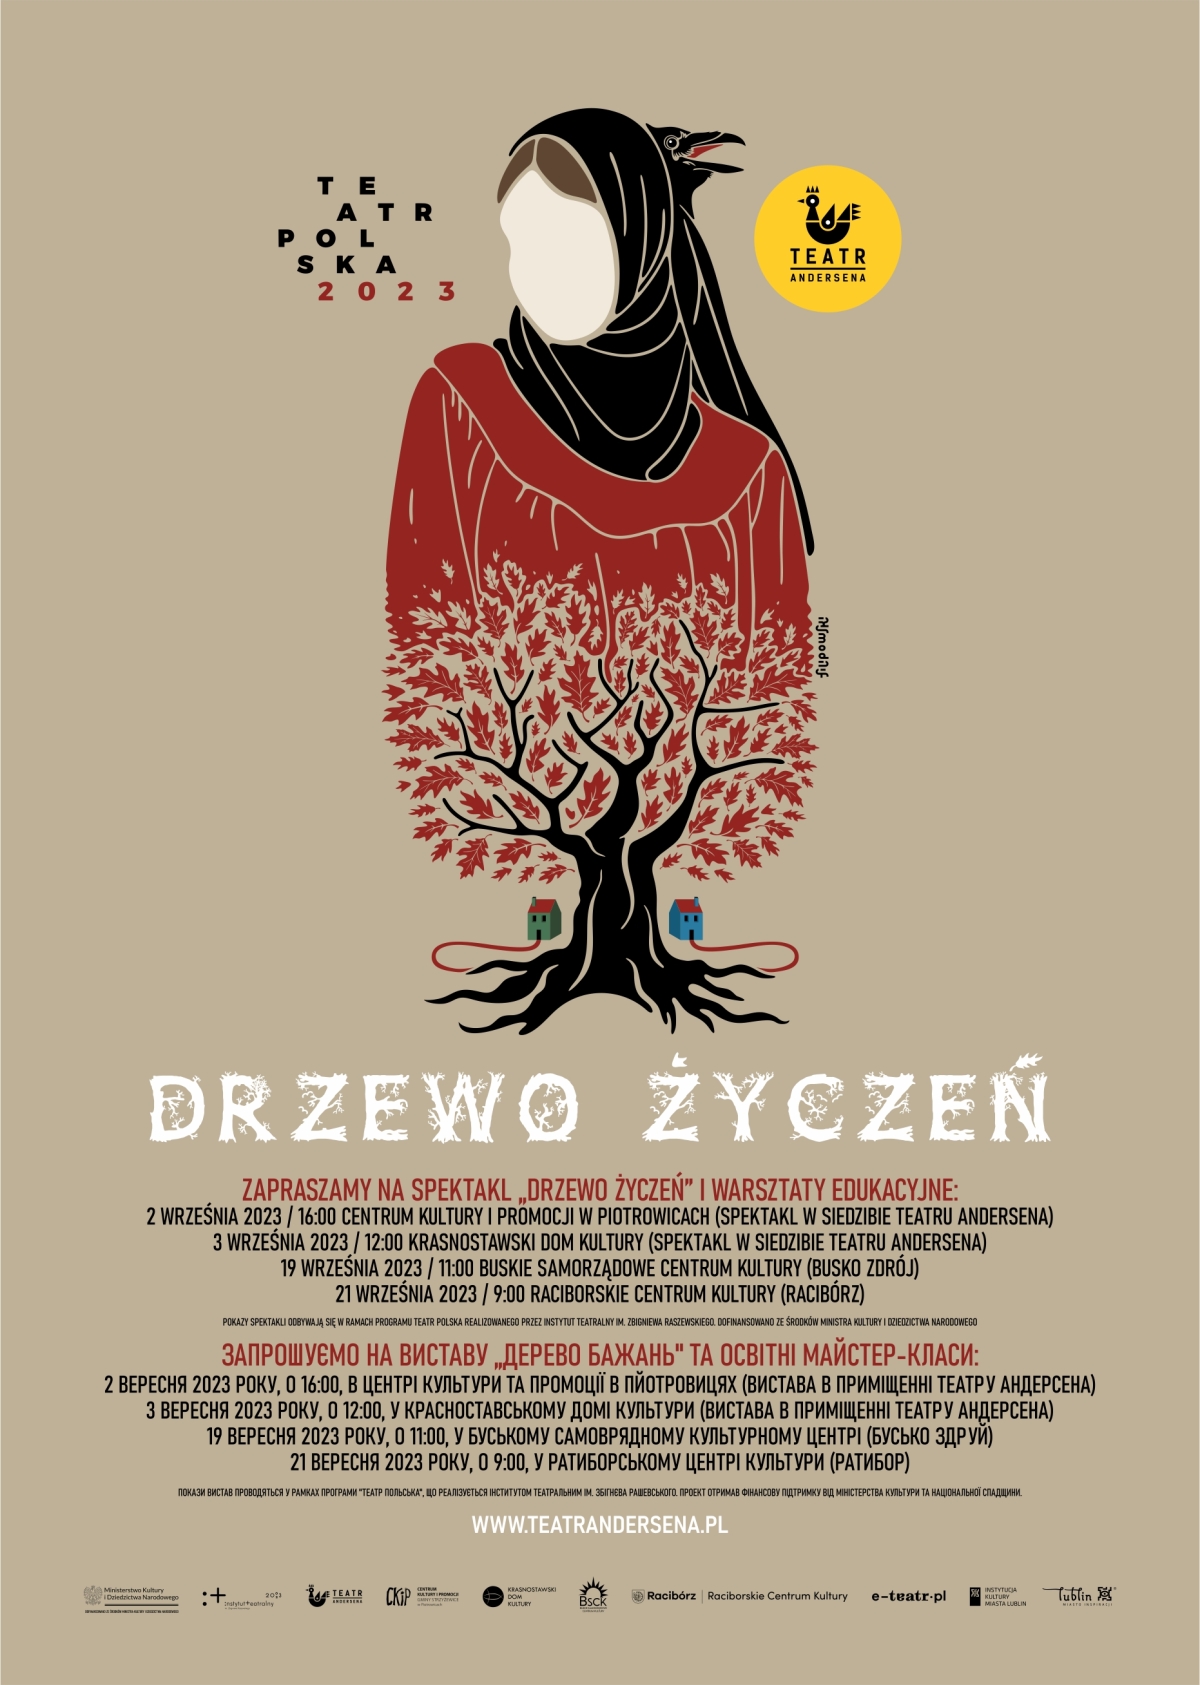 teatr_polska_2023_drzewo_ycze_plakat_www